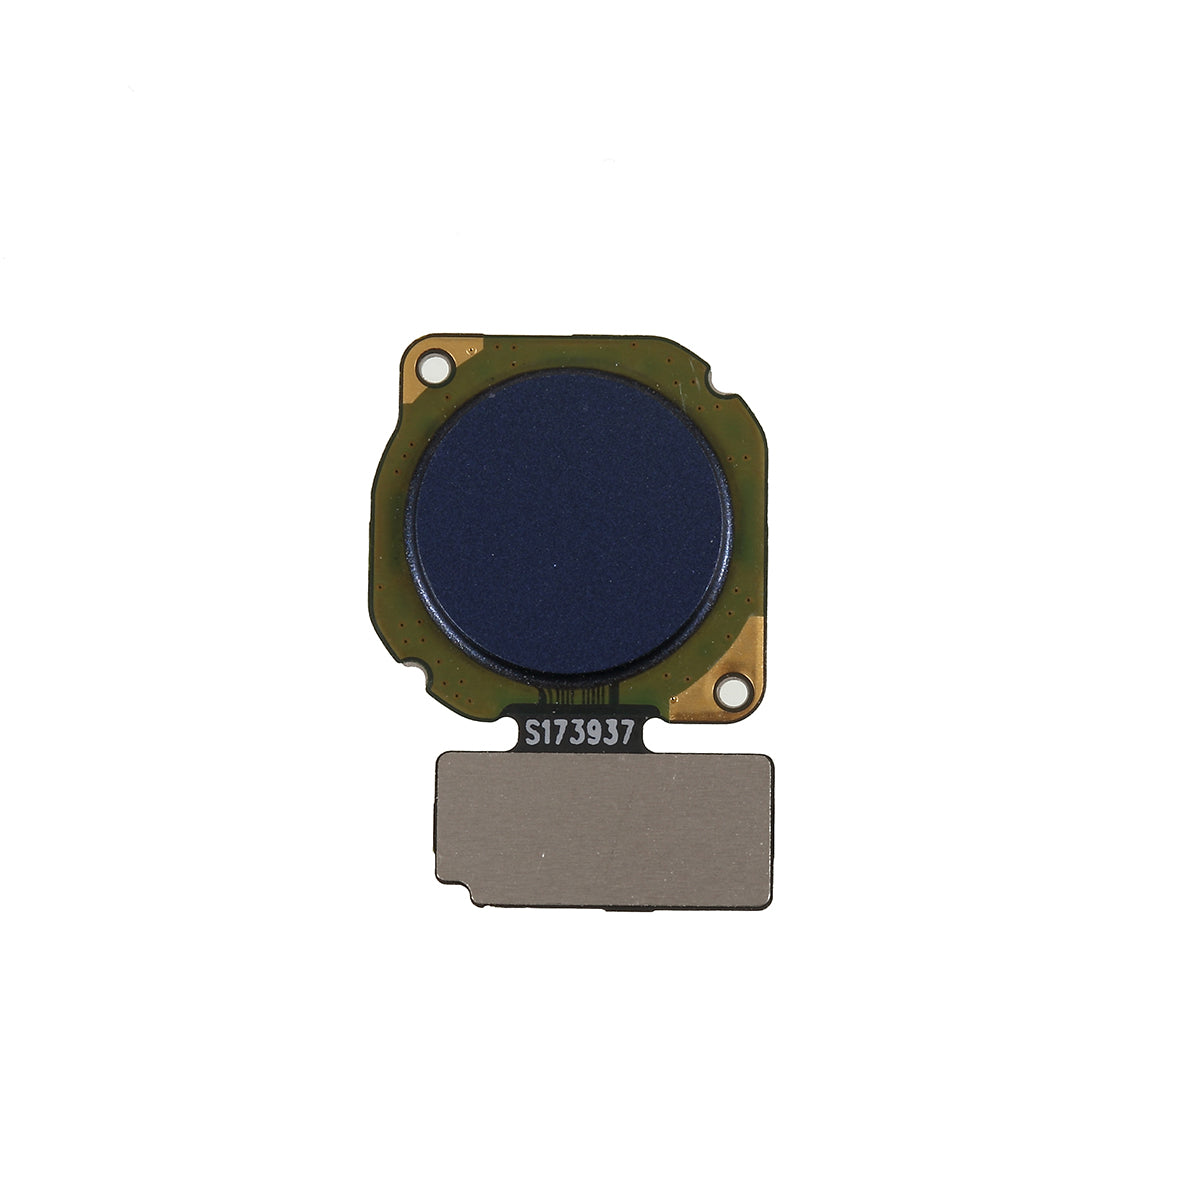 OEM Fingerprint Home Button Flex Cable Repair Part for Honor 8X / View 10 Lite - Blue